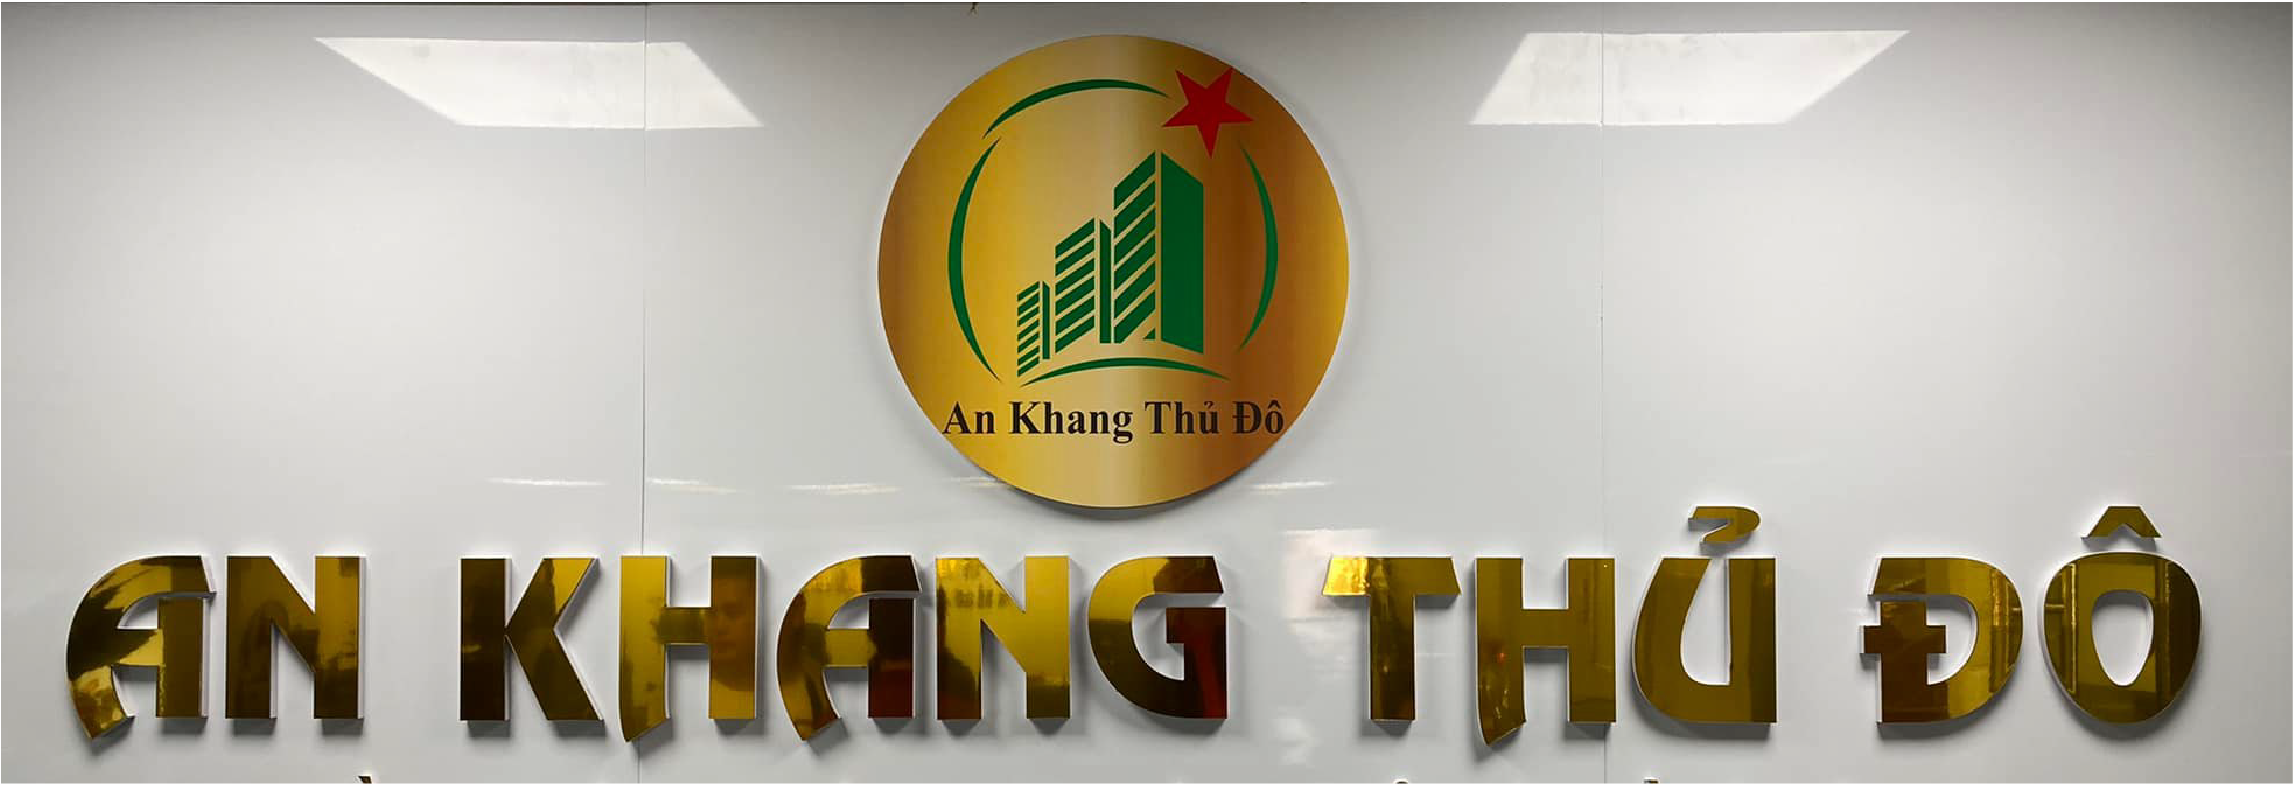 an-khang-thu-do-10-01